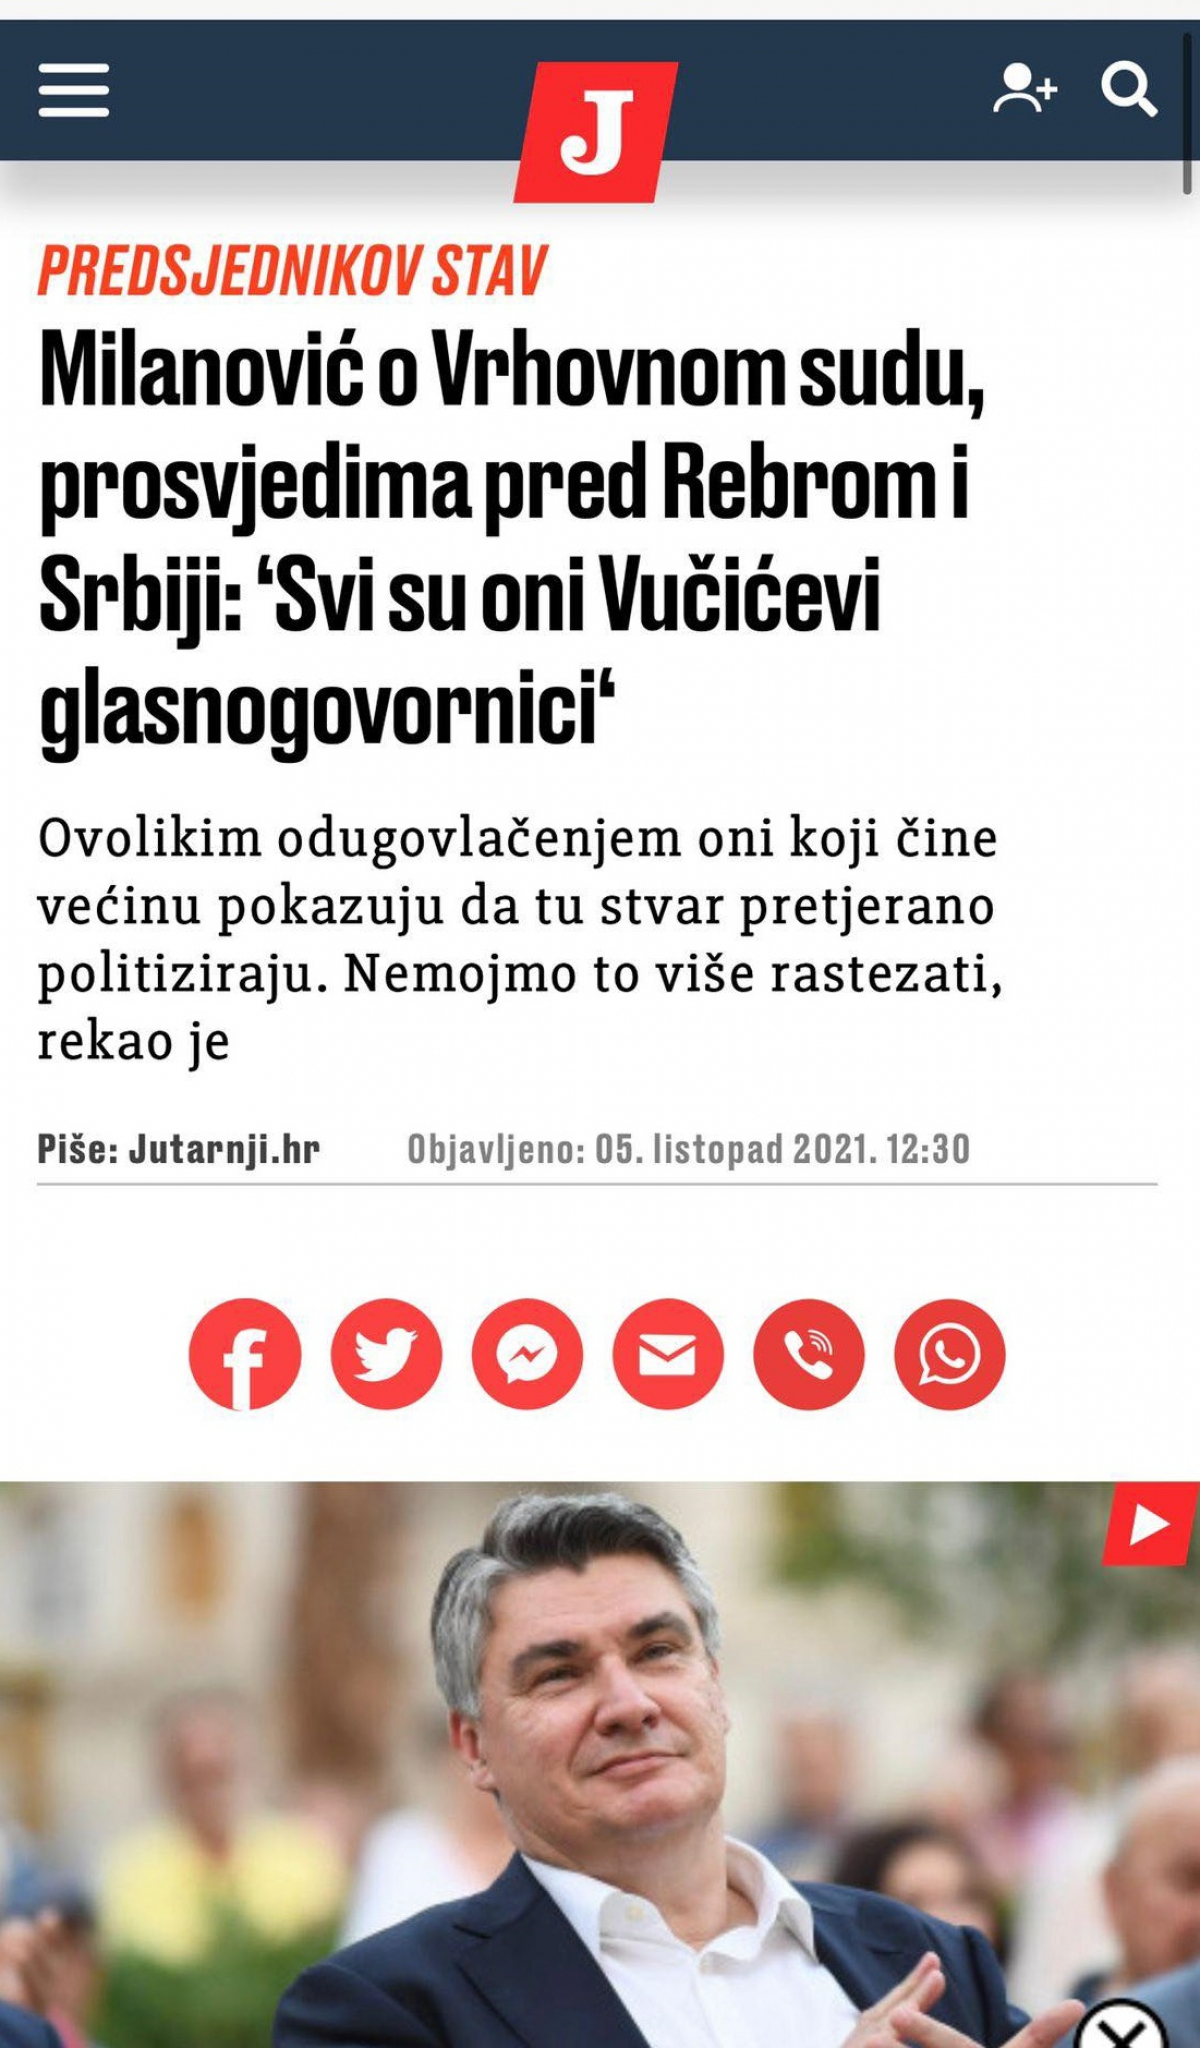 ŠTA JE ZAJEDNIČKO HRVATSKIM, KURTIJEVIM I ĐILASOVIM MEDIJIMA?! Mržnja prema Vučiću i uspesima Srbije!